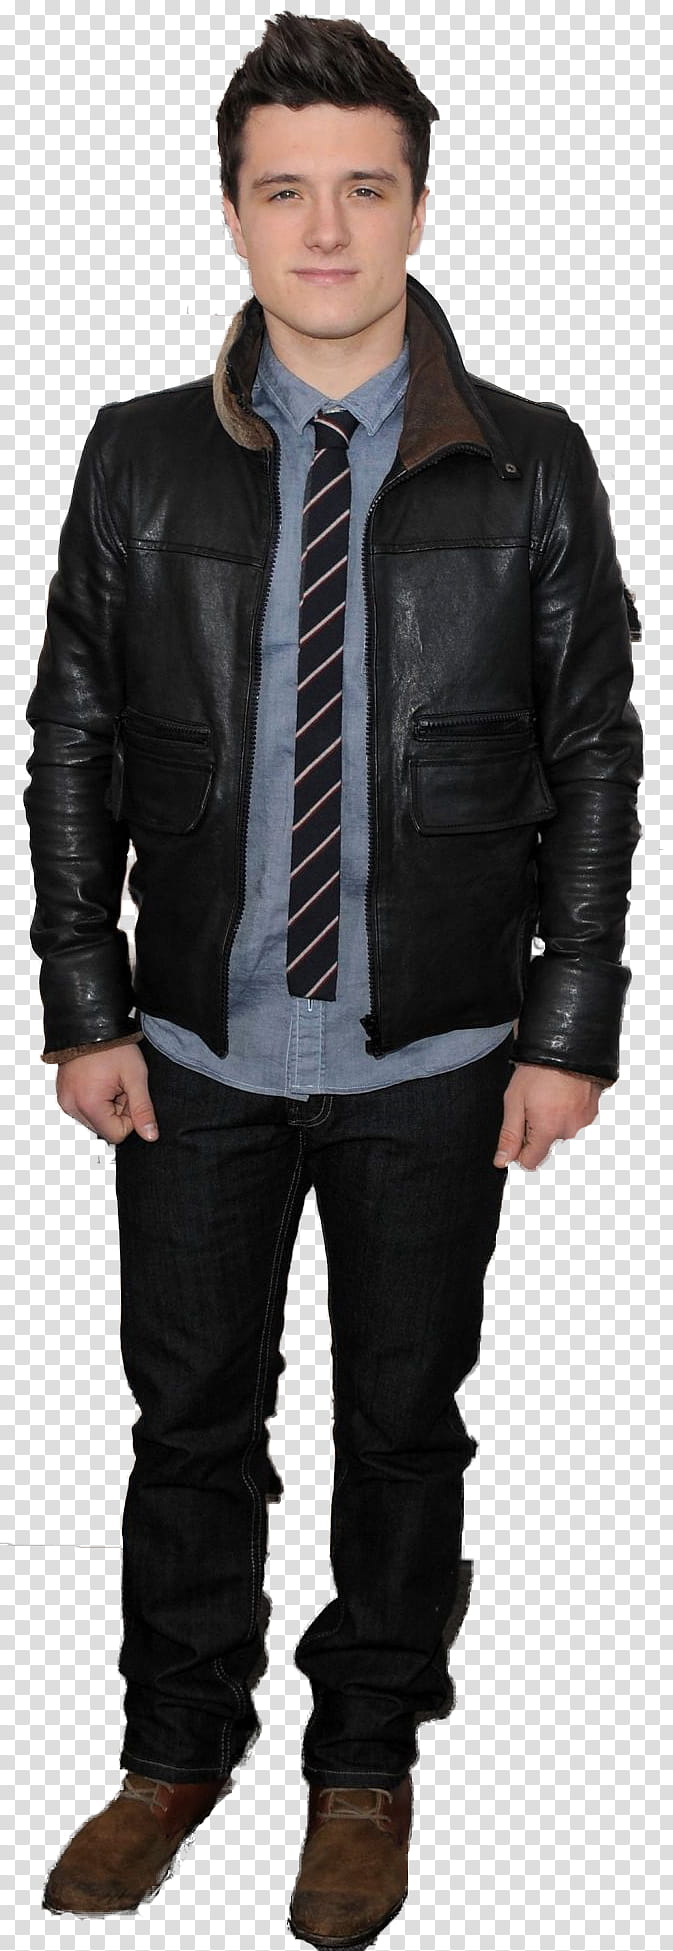 Josh Hutcherson zip transparent background PNG clipart